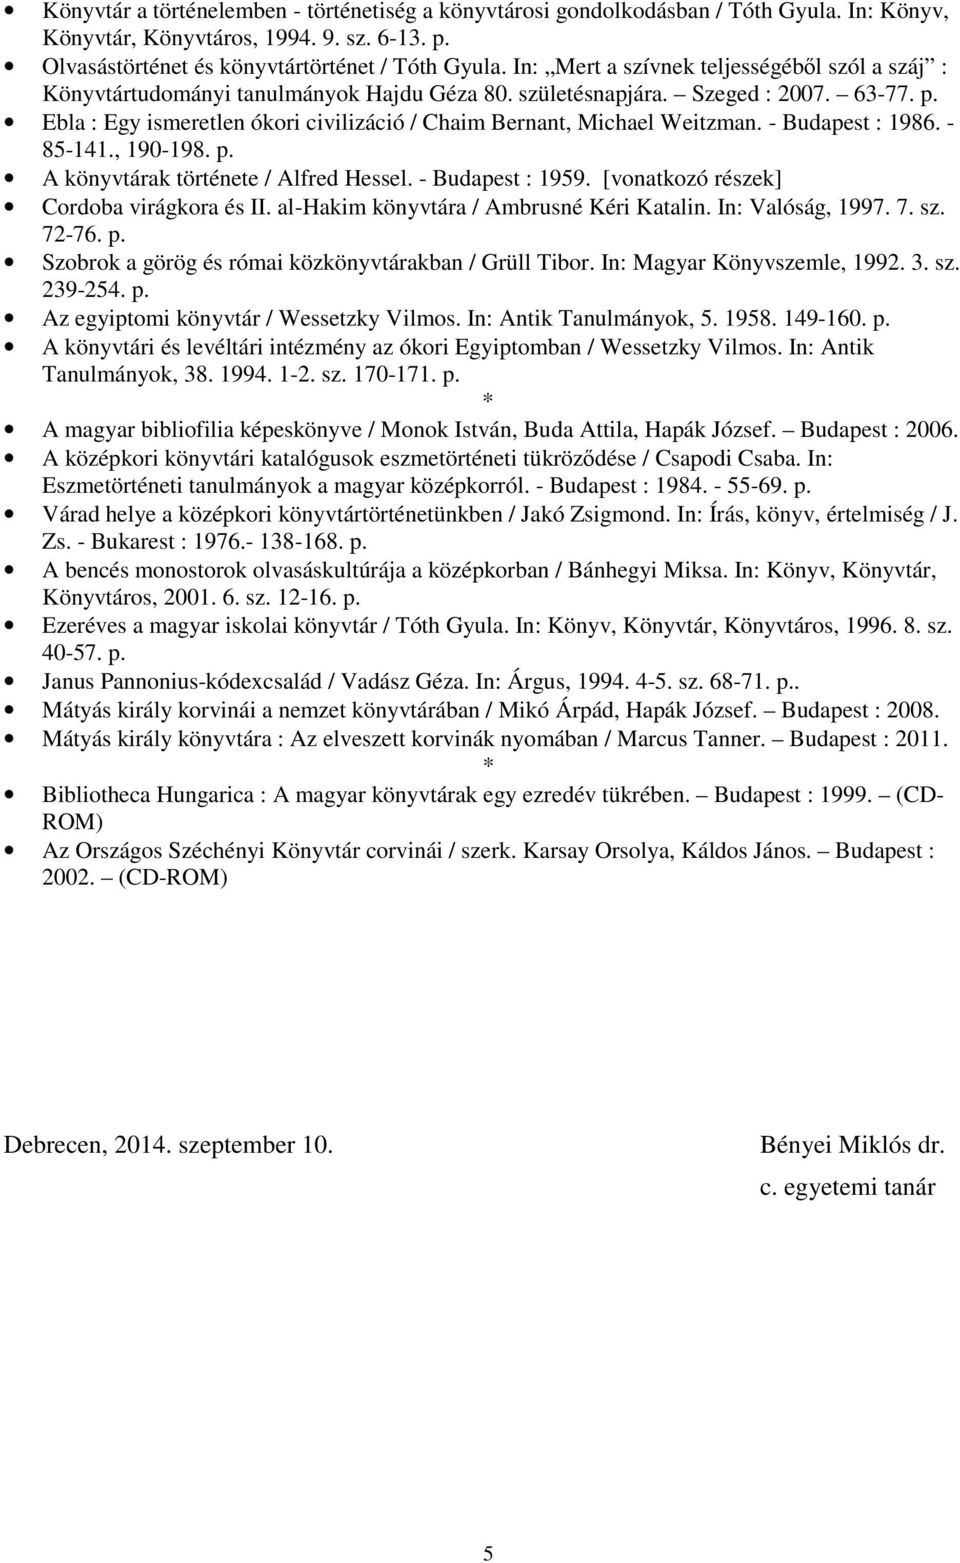 Ebla : Egy ismeretlen ókori civilizáció / Chaim Bernant, Michael Weitzman. - Budapest : 1986. - 85-141., 190-198. p. A könyvtárak története / Alfred Hessel. - Budapest : 1959.